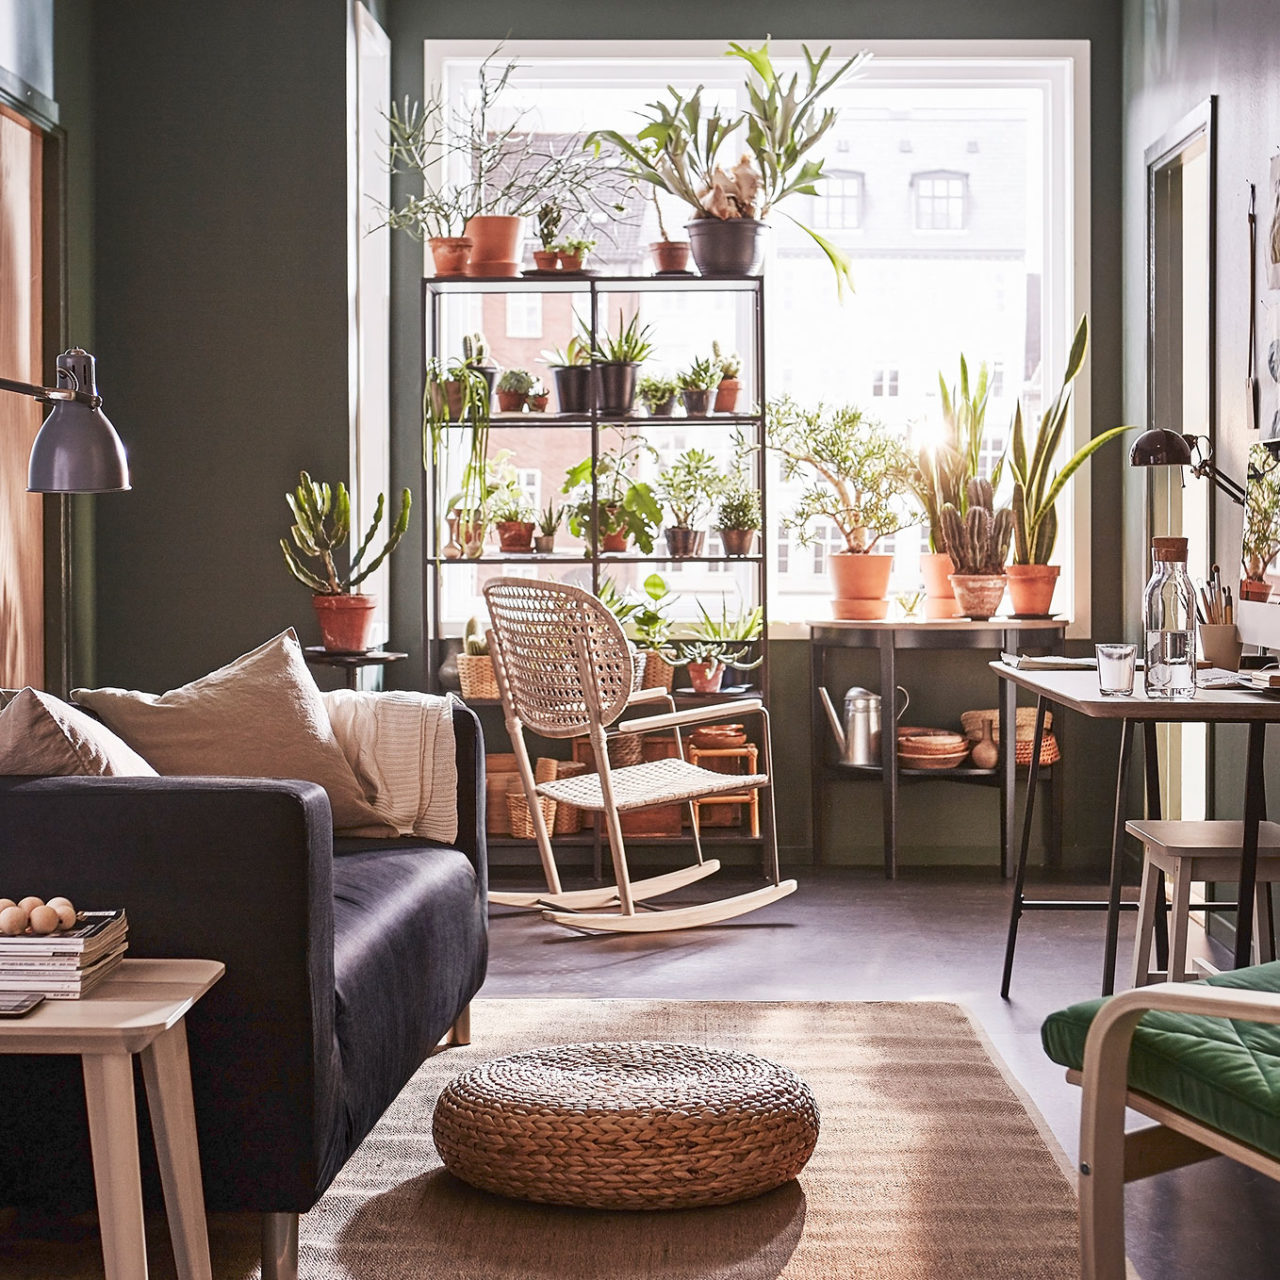 Habitación con detalles y muebles en materiales naturales trenzados. Ventana con plantas colocadas sobre estantes y mesas.